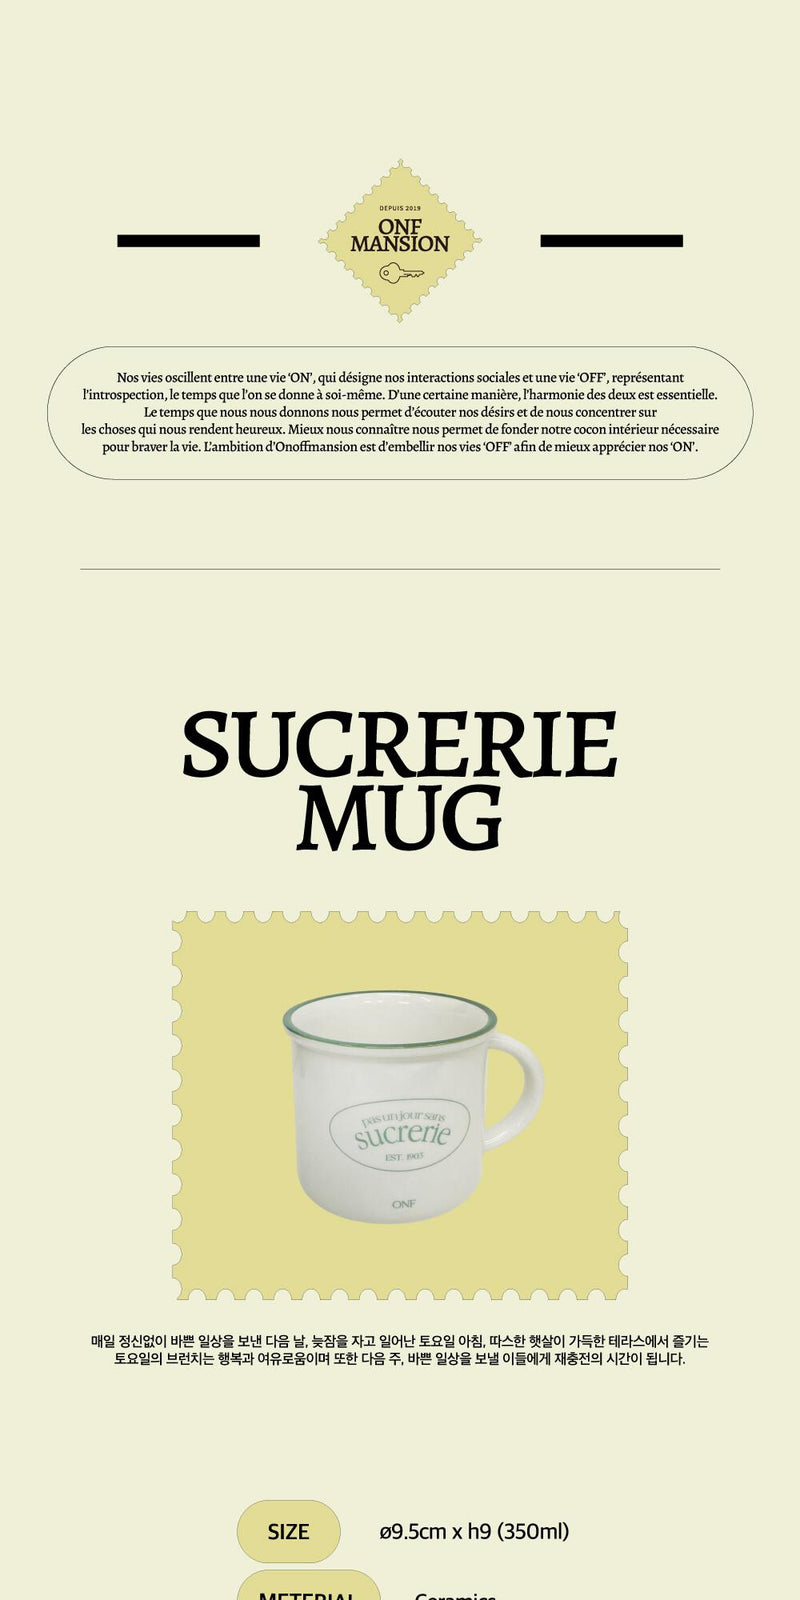 [MAEIRE] Sucrerie mug Green